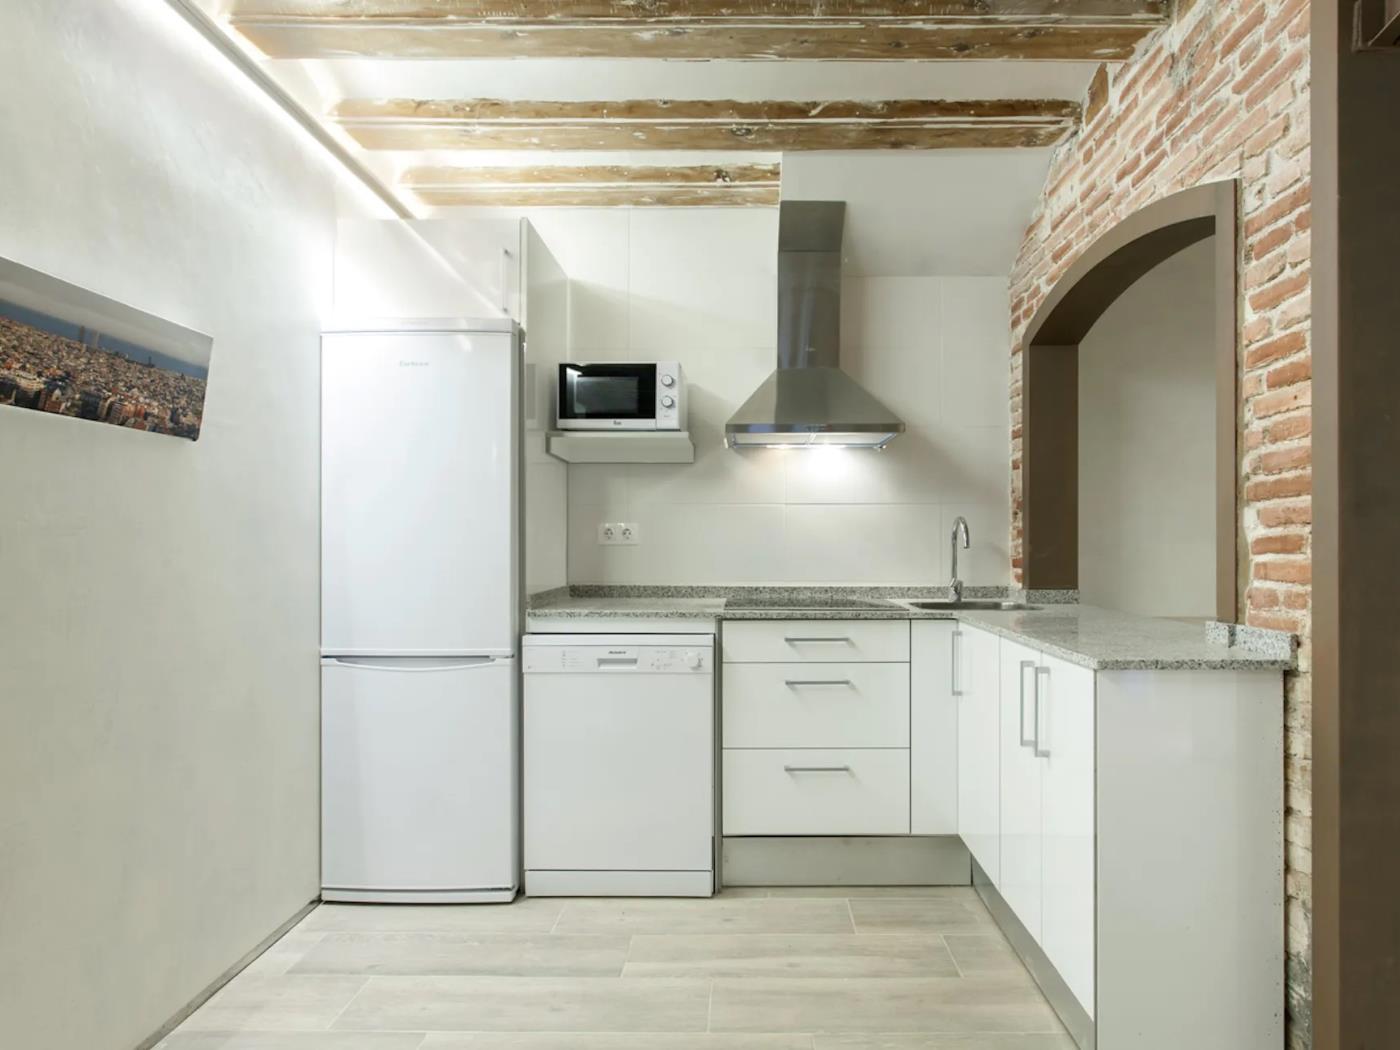 Chambre spacieuse et lumineuse avec salle de bain privée - My Space Barcelona Appartements